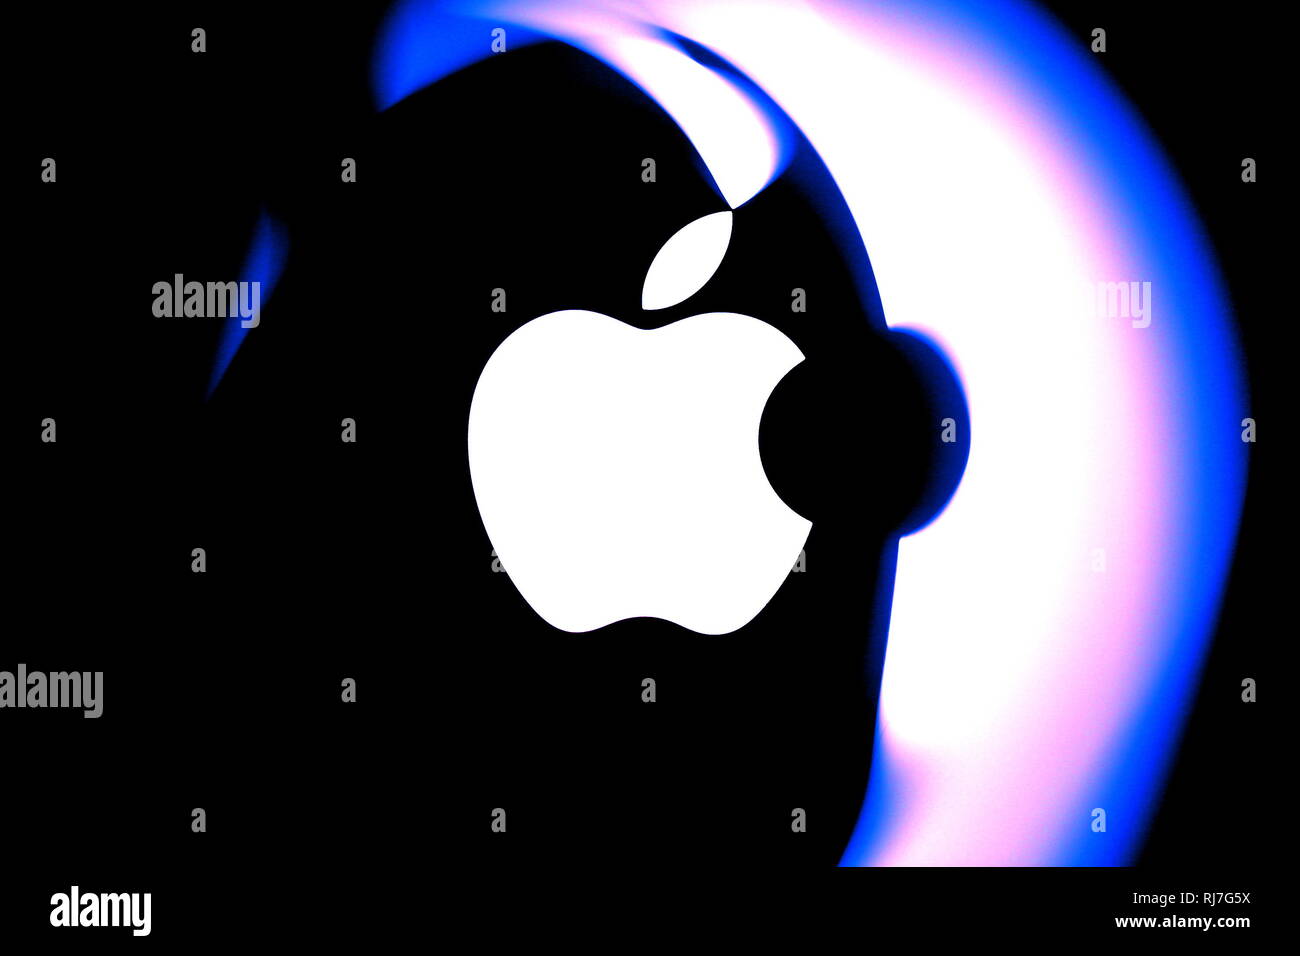 Benvenuti in Repubblica ceca - MARZO 16, 2015:Dettaglio del logo Apple sul Mac Book Air riflettendo in foglio trasparente. Editoriale illustrativa. Solo uso editoriale. Foto Stock